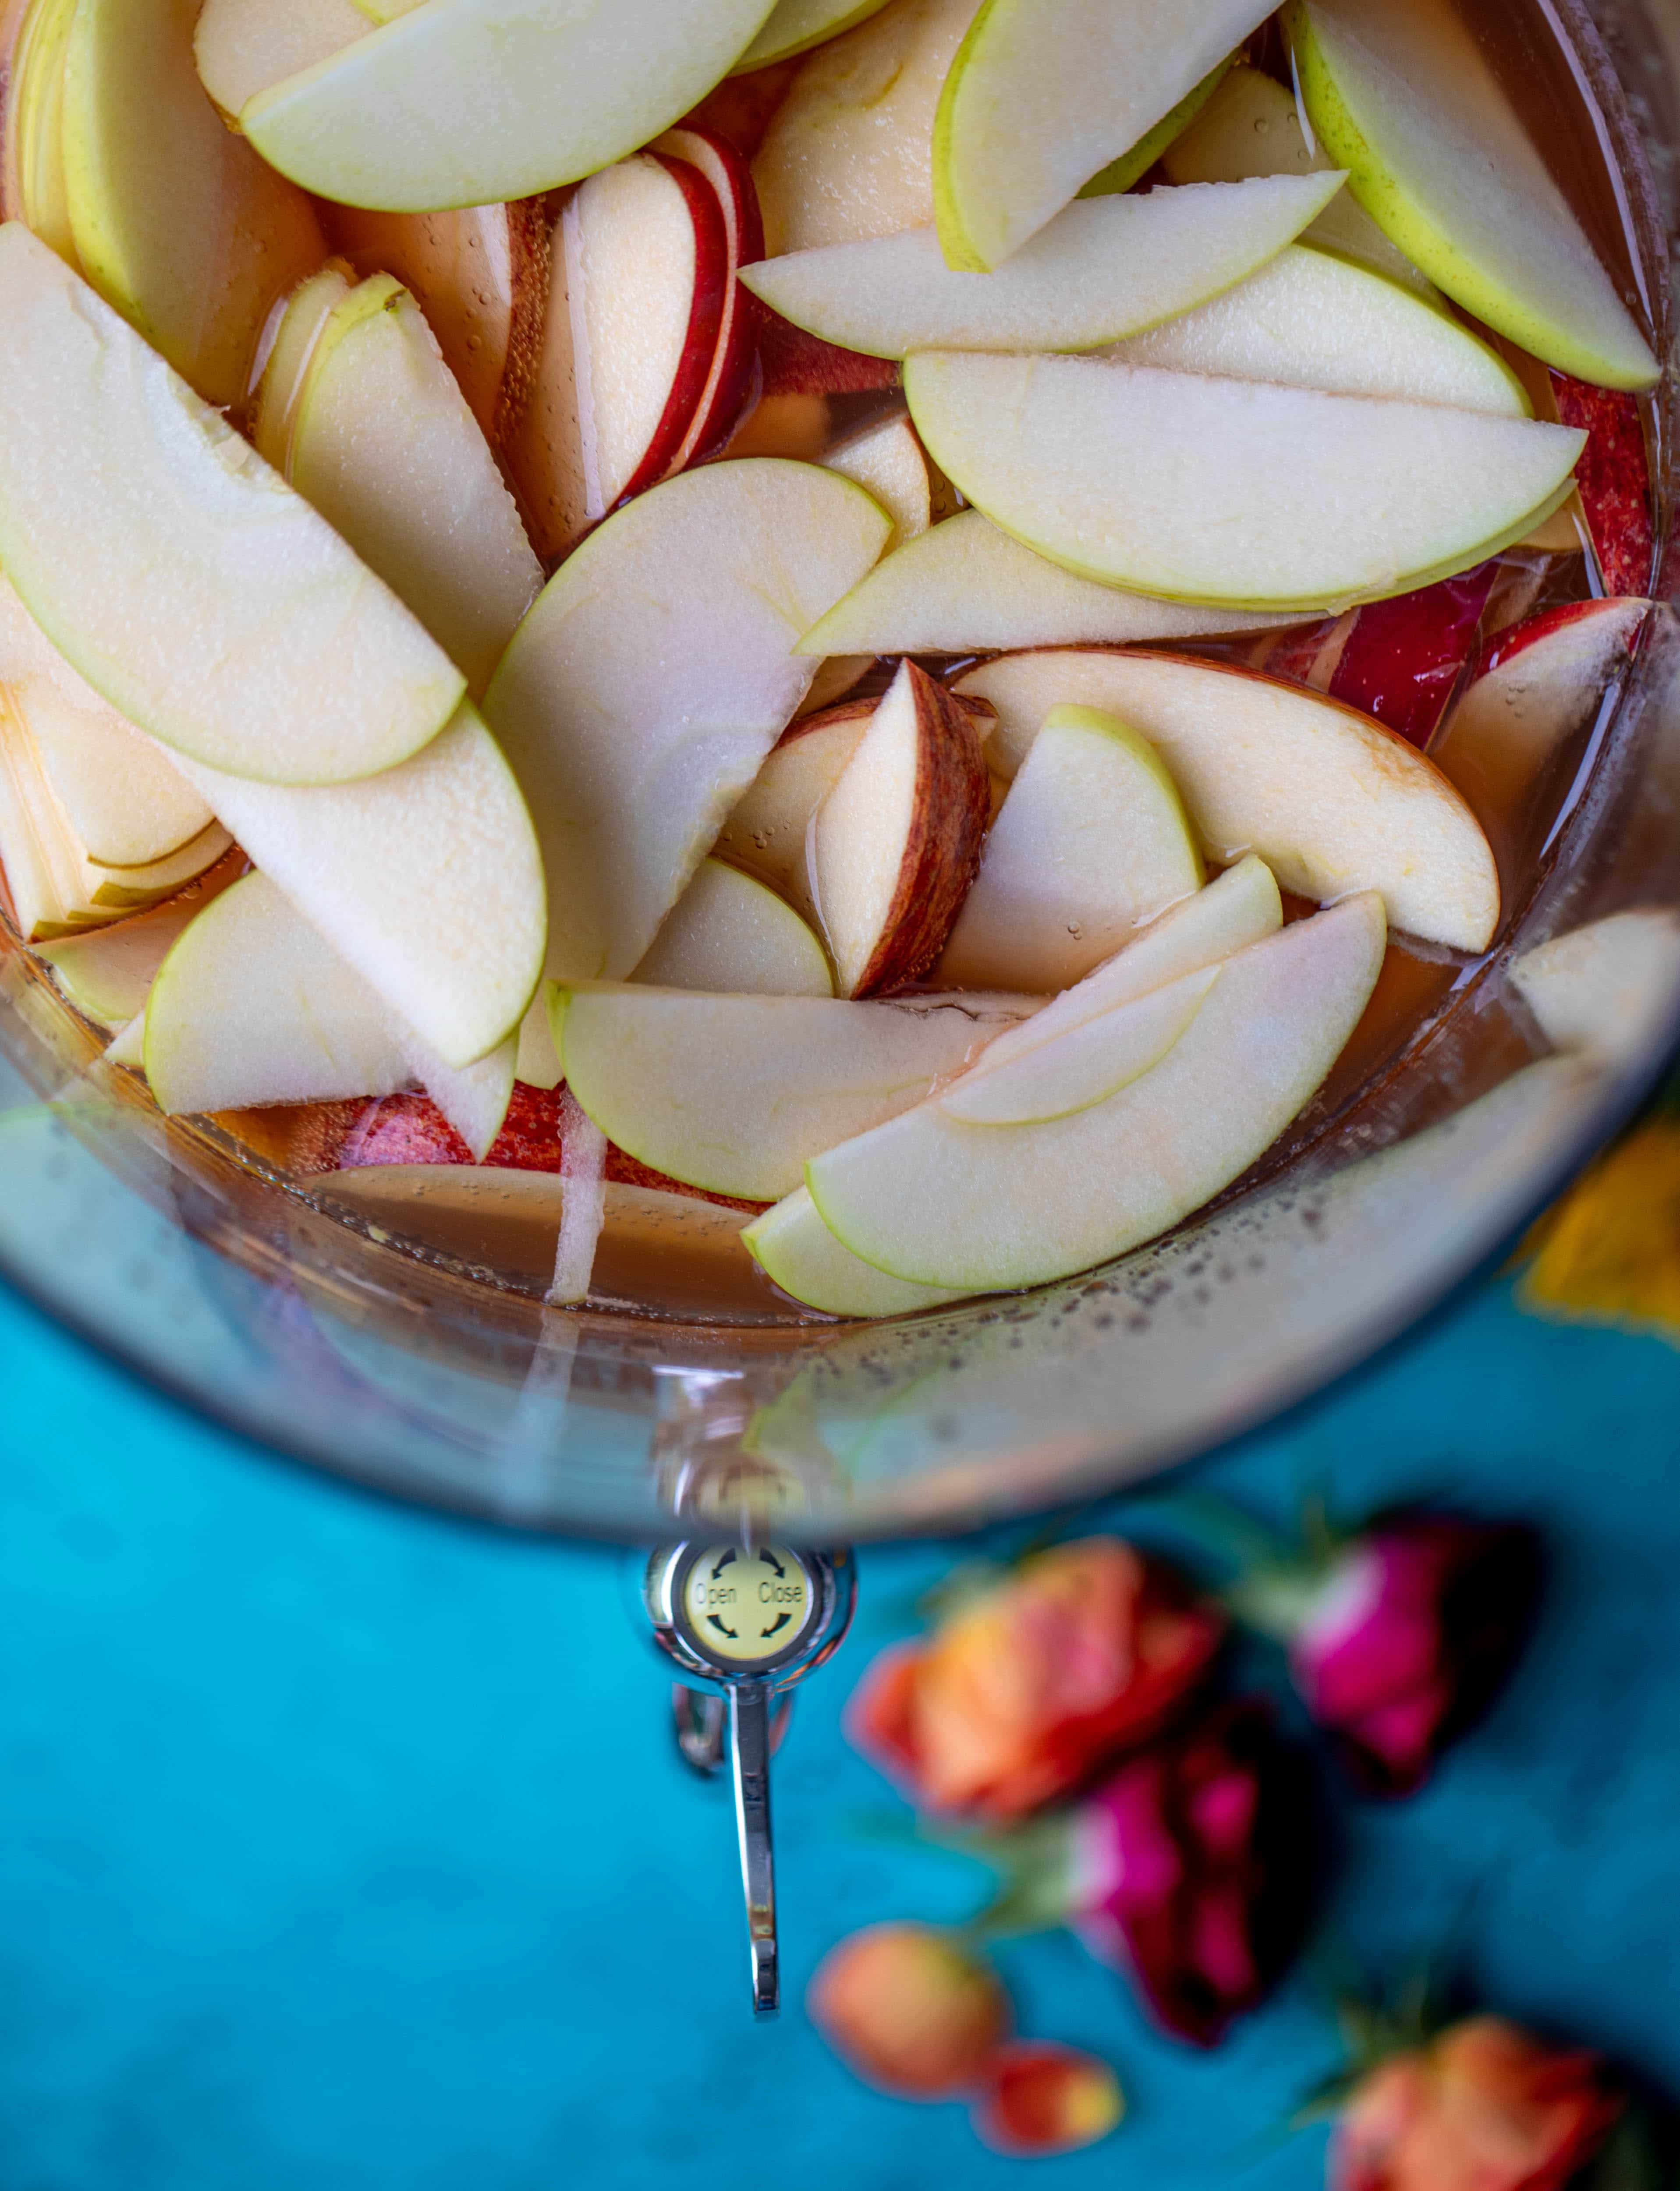 这个苹果酒潘趣酒配方有很多秋天的味道!苹果酒，aperol，石榴苏打水和普罗赛克结合在一起，创造出一款起泡的饮料!